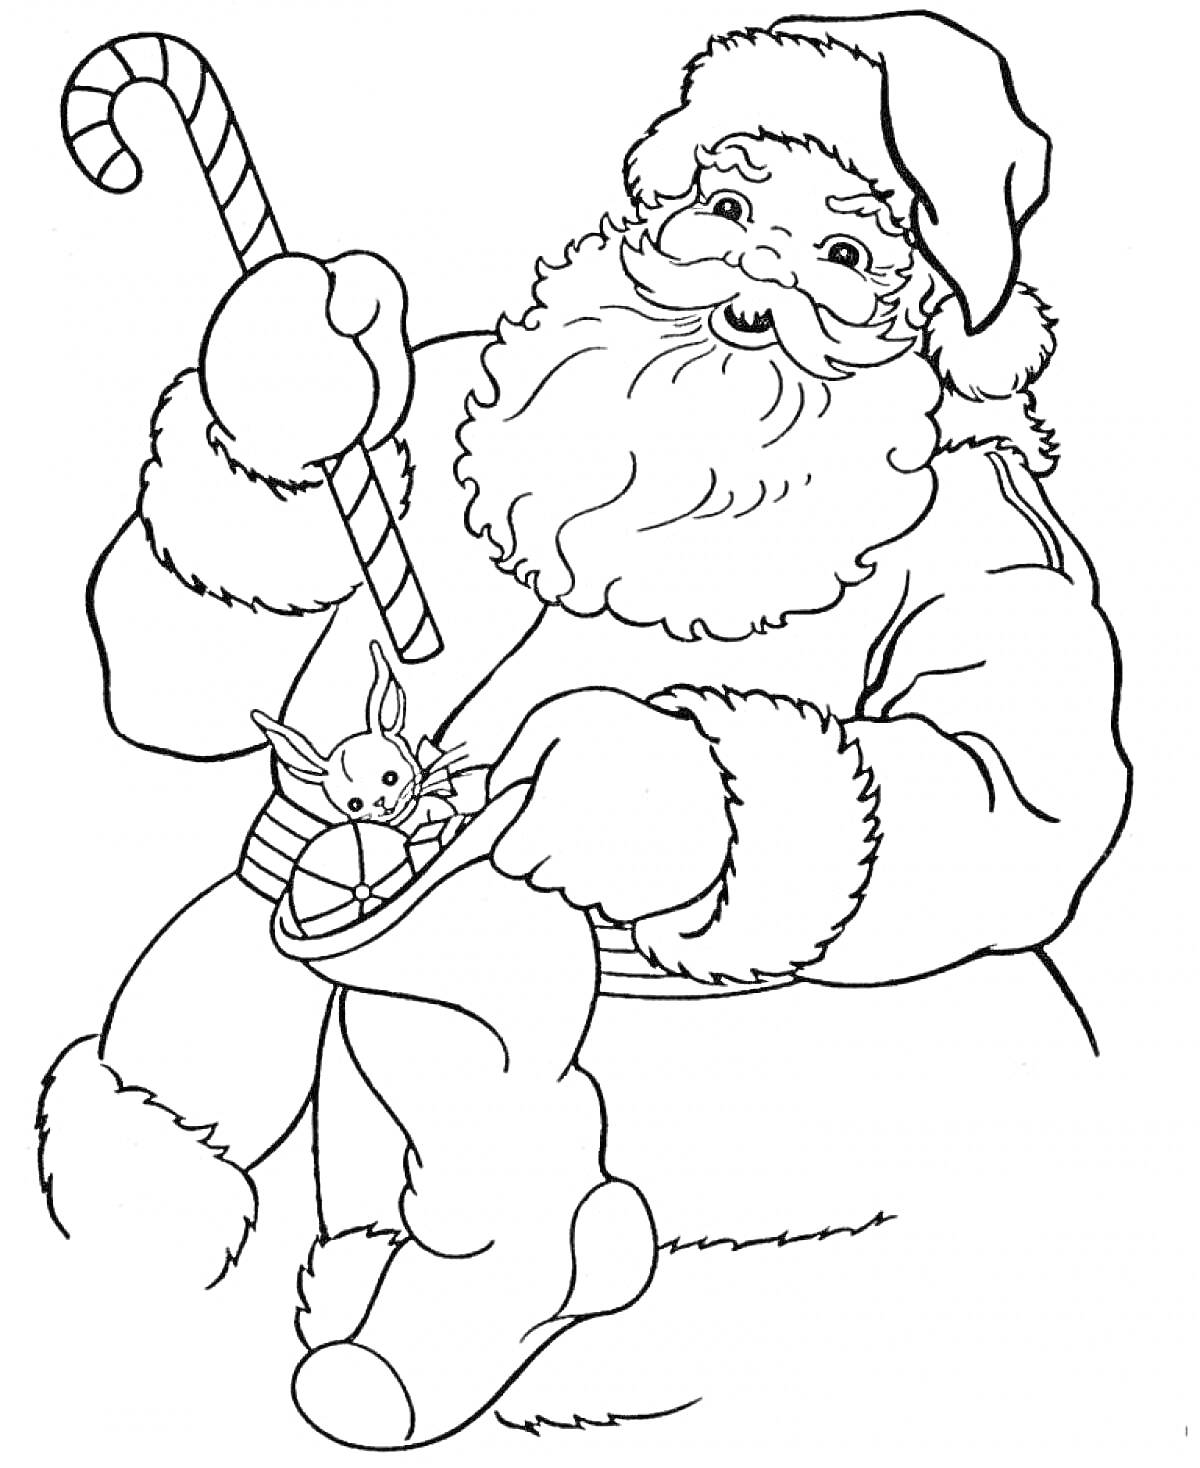 Раскраска Санта Клаус с зайчиком и леденцом. В мешке есть зайчик и шарик, Санта держит леденец в виде трости.